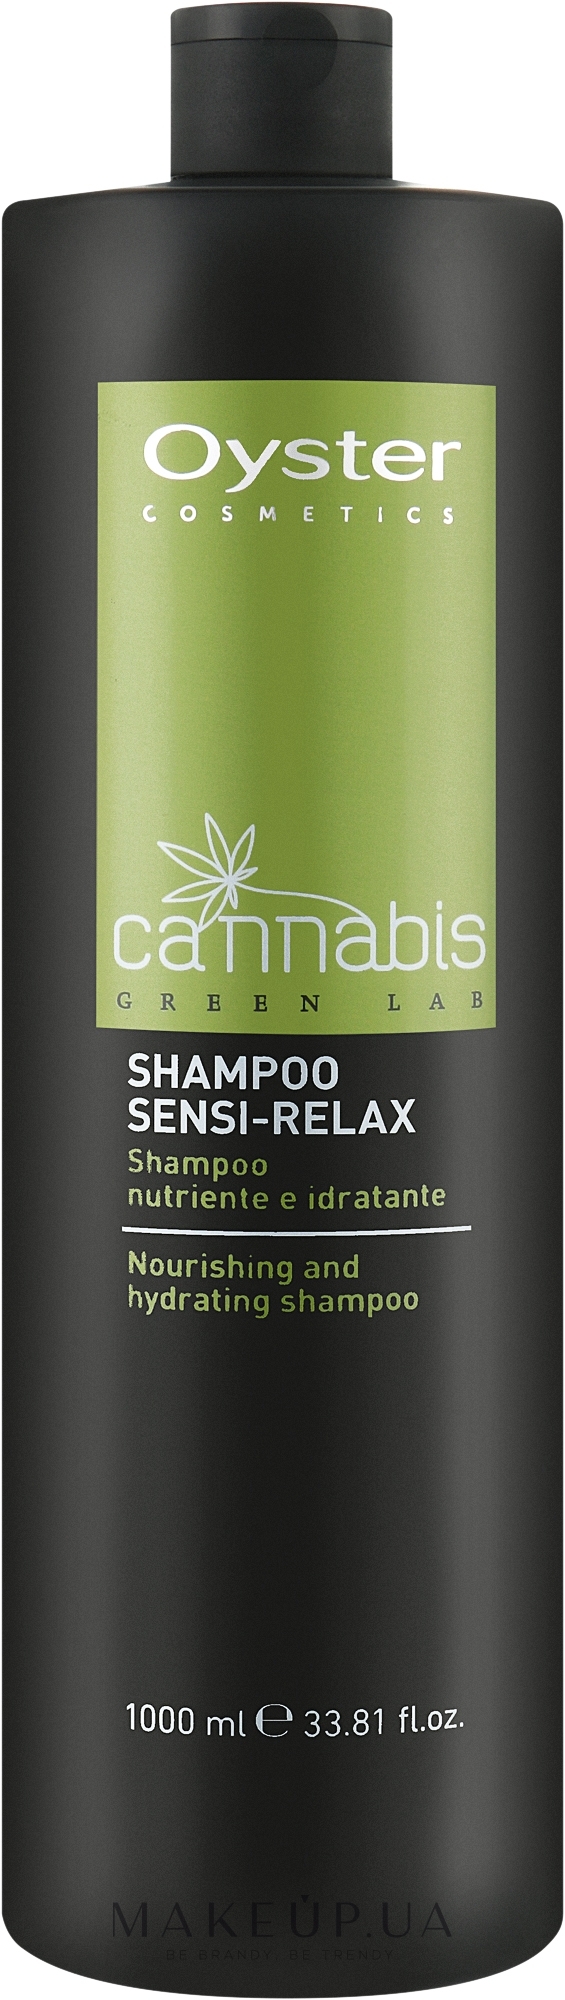 Шампунь для волосся з канабісом без SLES і парабенів - Oyster Cosmetics Cannabis Green Lab Shampoo Sensi-Relax — фото 1000ml